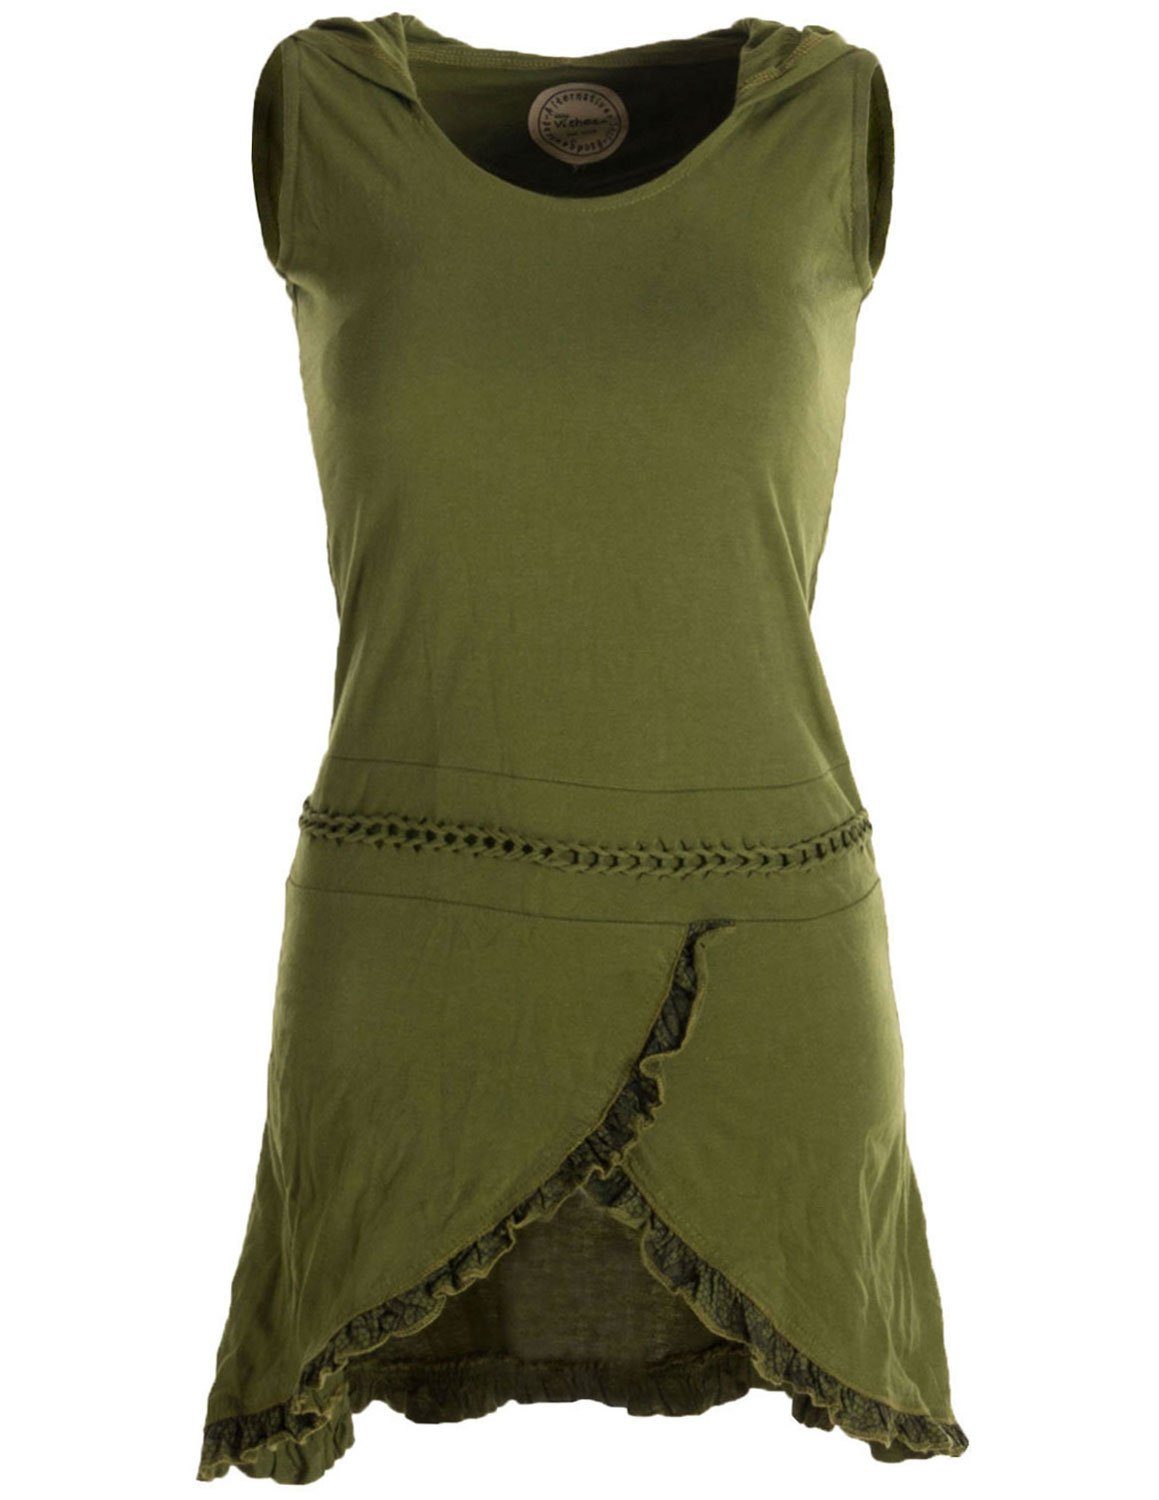 Vishes Zipfelkleid Asymmetrisches Lagenlook Baumwollkleid und Rüschen, Flechtwerk Zipfelkapuze mit olivegrün